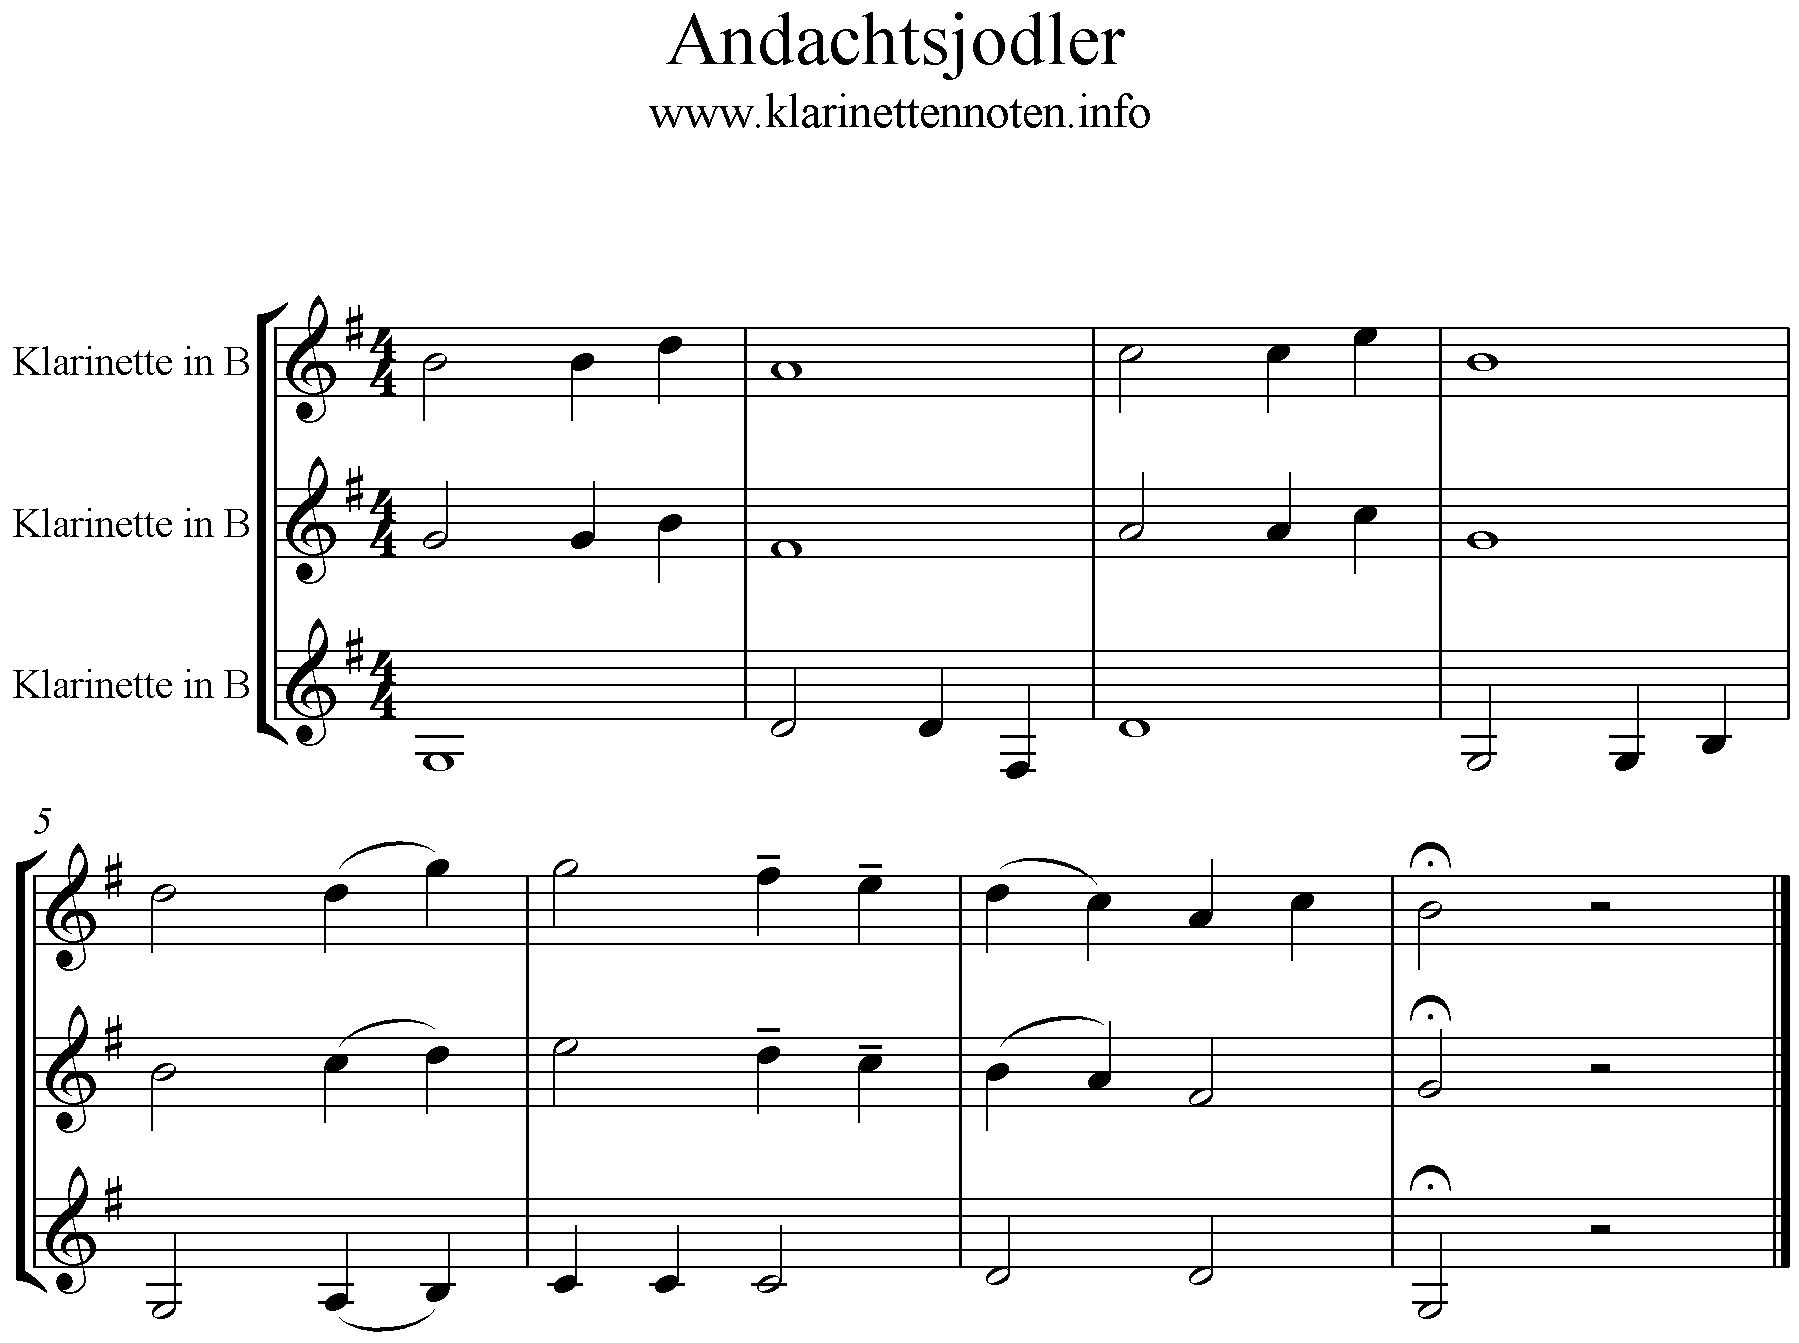 Noten ndachtsjodler, 3stimmig, Trio, G-Dur